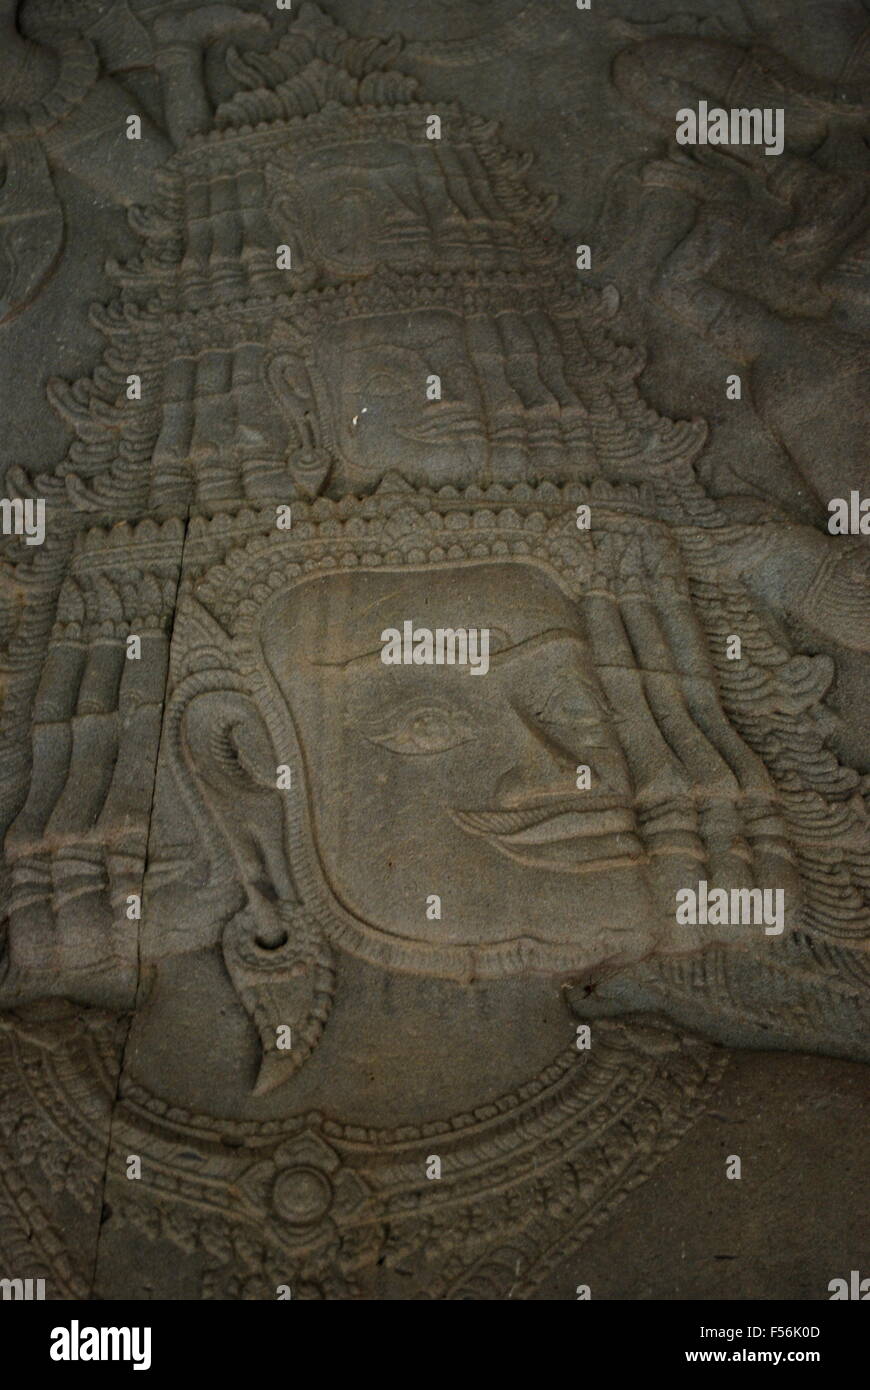 Détail montrant la sculpture khmère historique de démon légende hindoue, le barattage de l'océan de lait, bas-relief à Angkor Wat. Banque D'Images